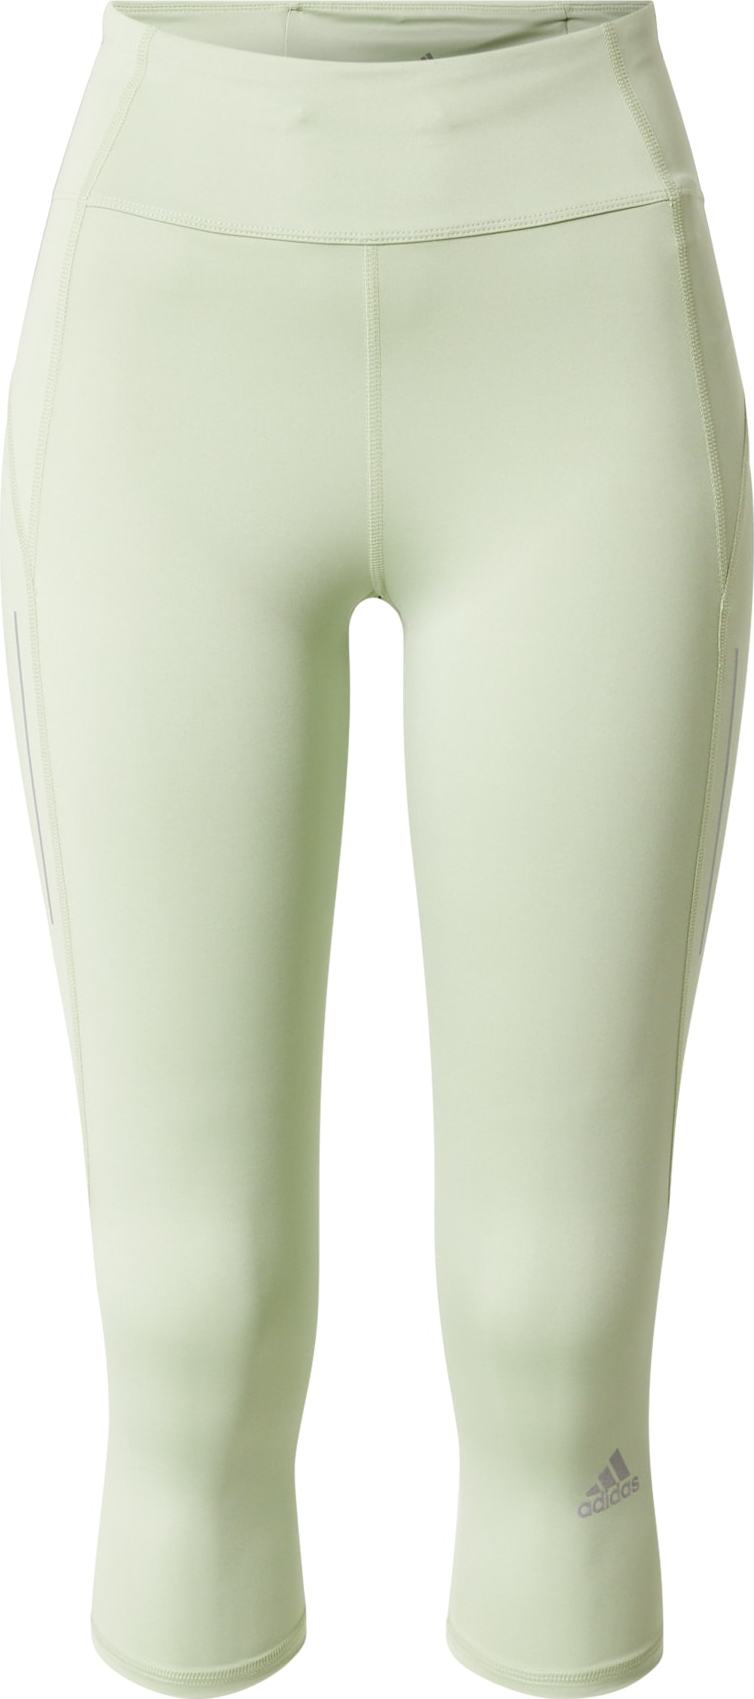 ADIDAS PERFORMANCE Sportovní kalhoty 'Own The Run' šedá / světle zelená